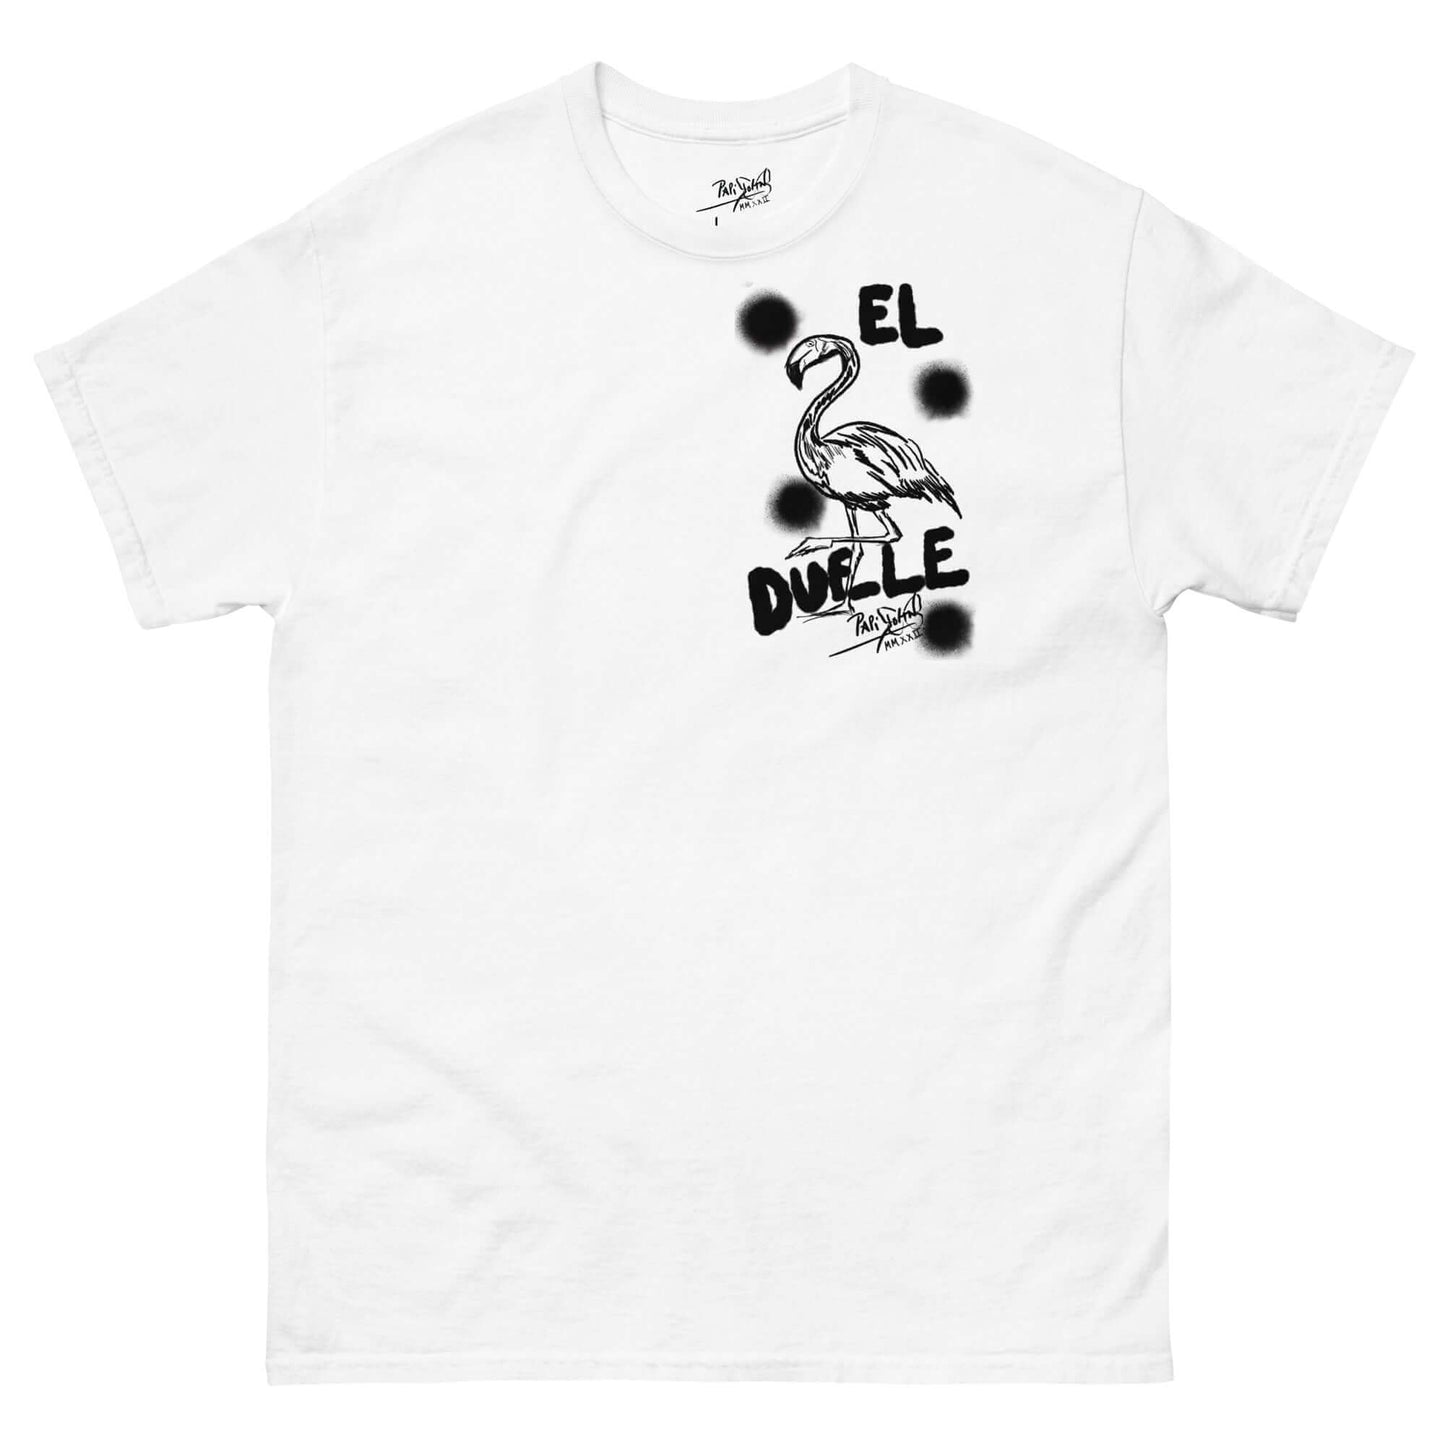 Camiseta blanca graffiti flamenco papijohn streetwear